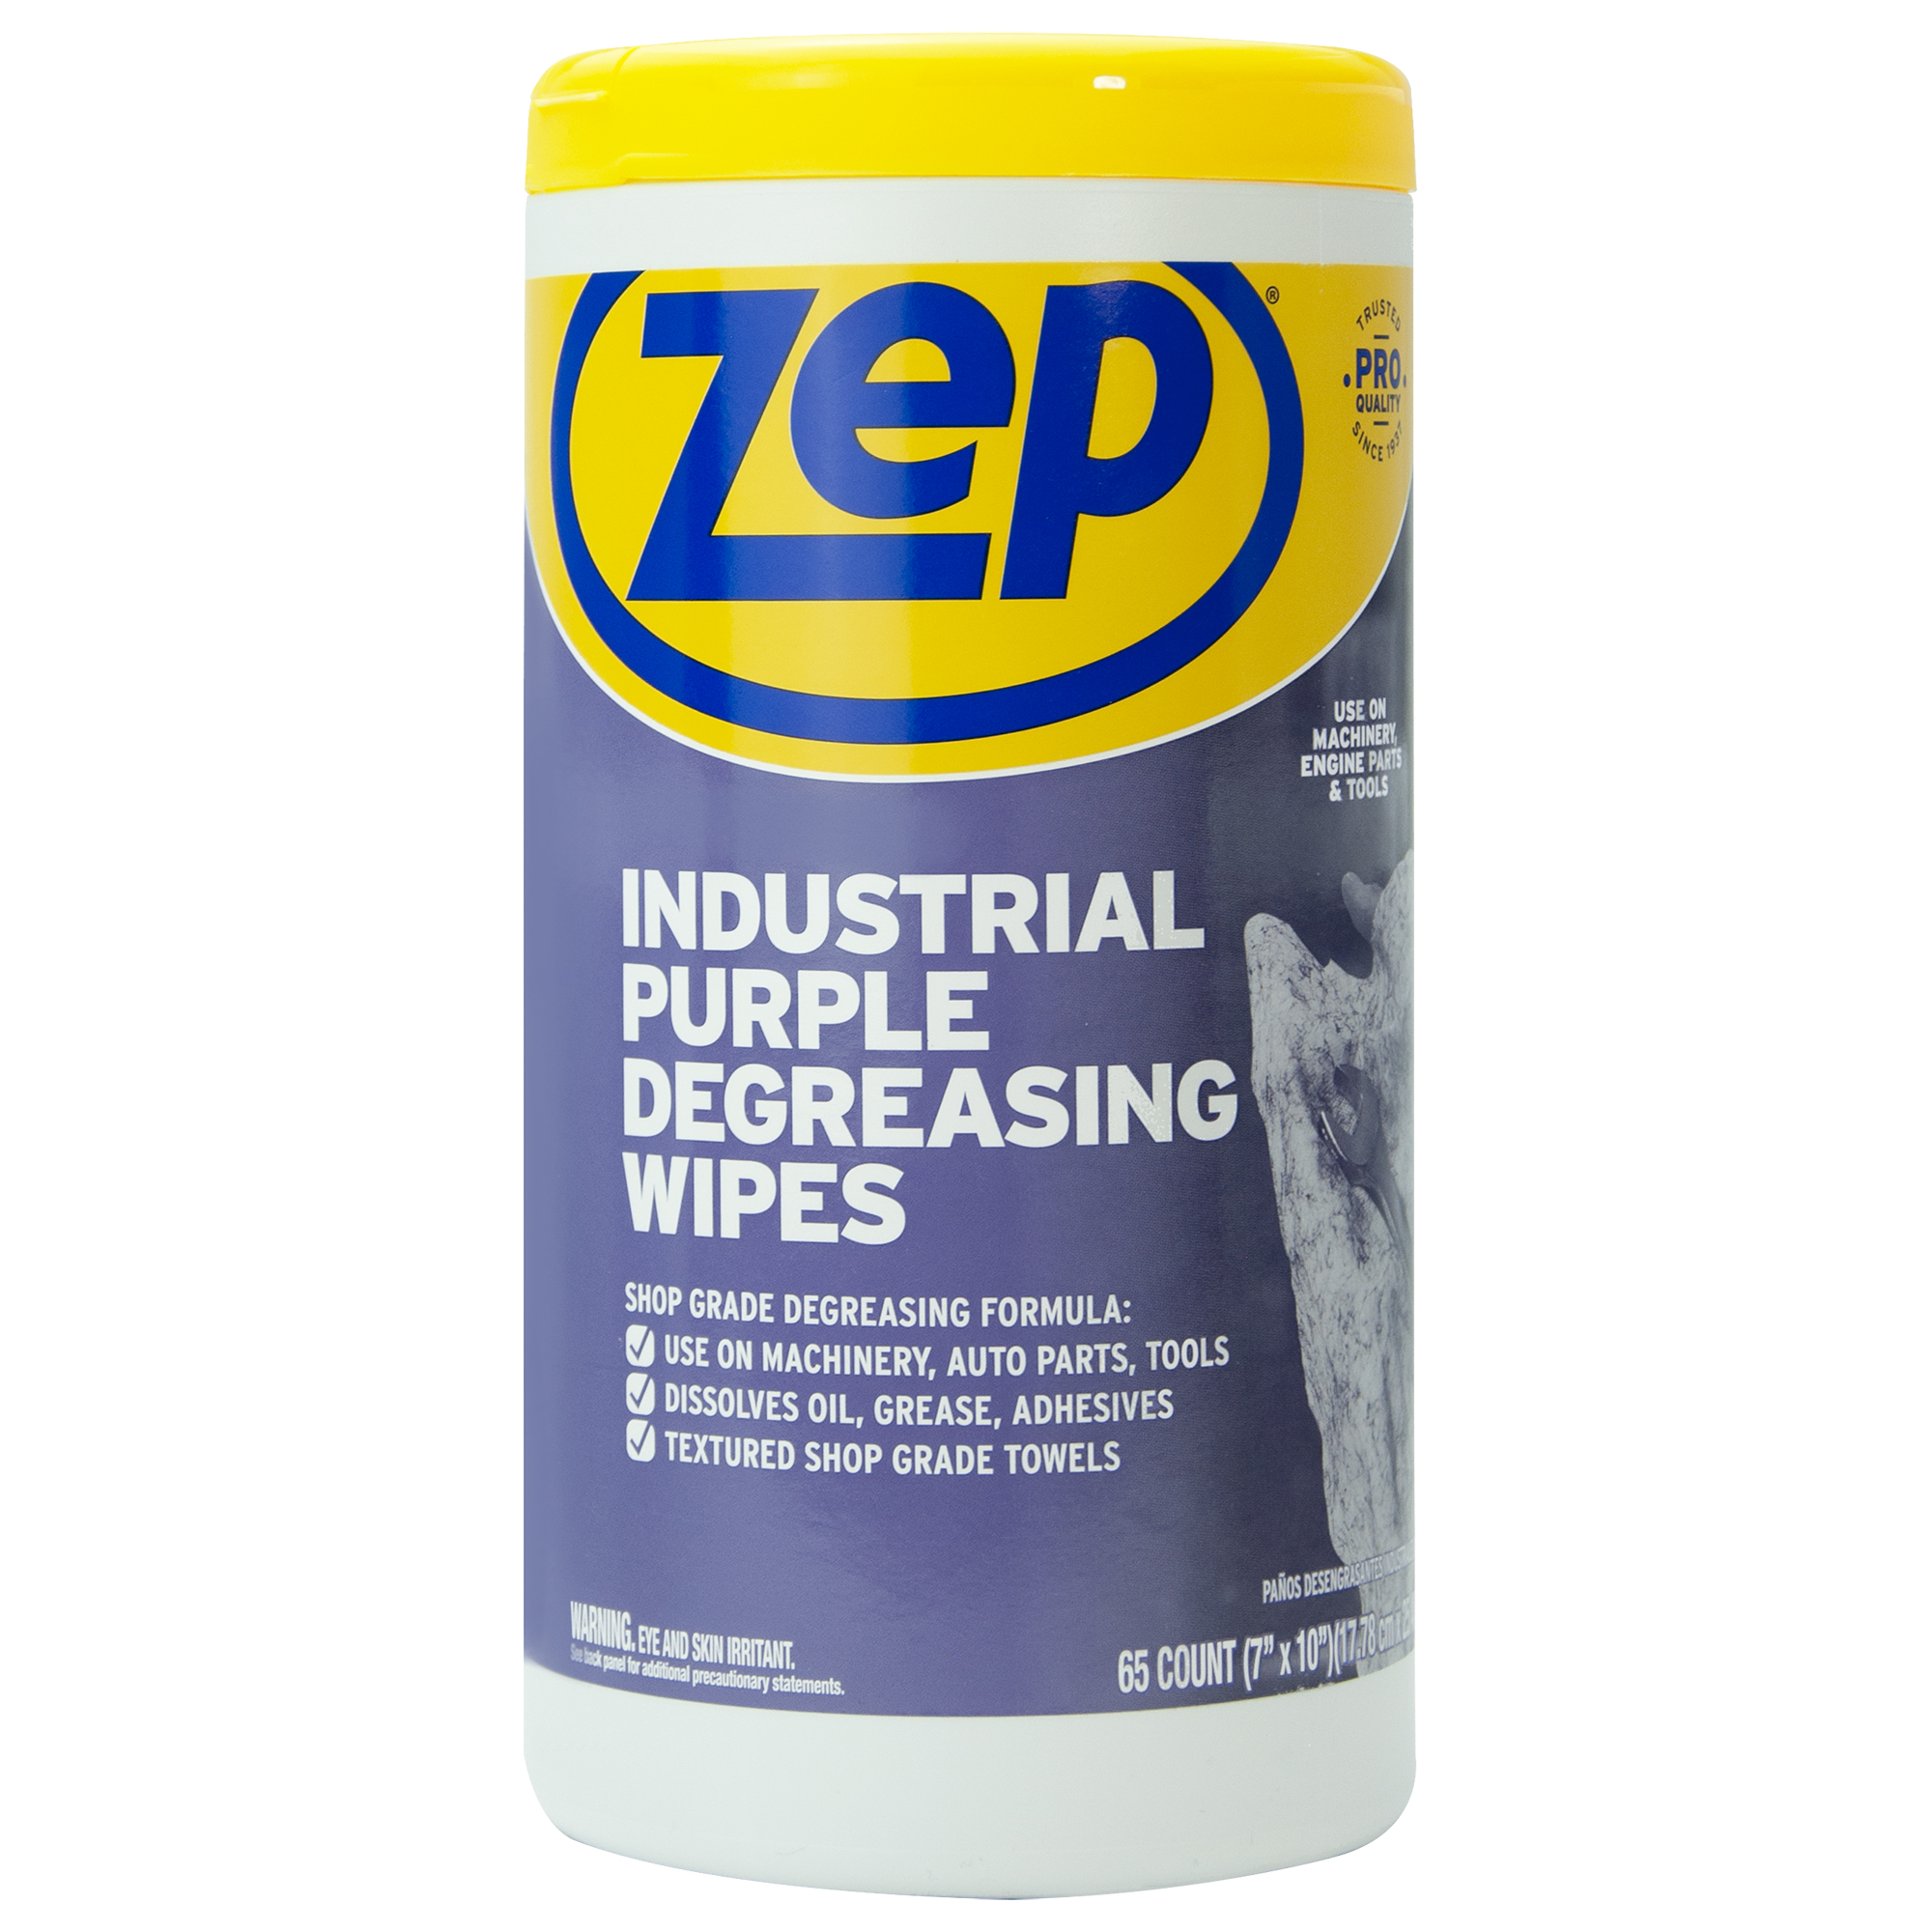 Zep Industrial Purple Degreasing Wipes - image 1 of 6